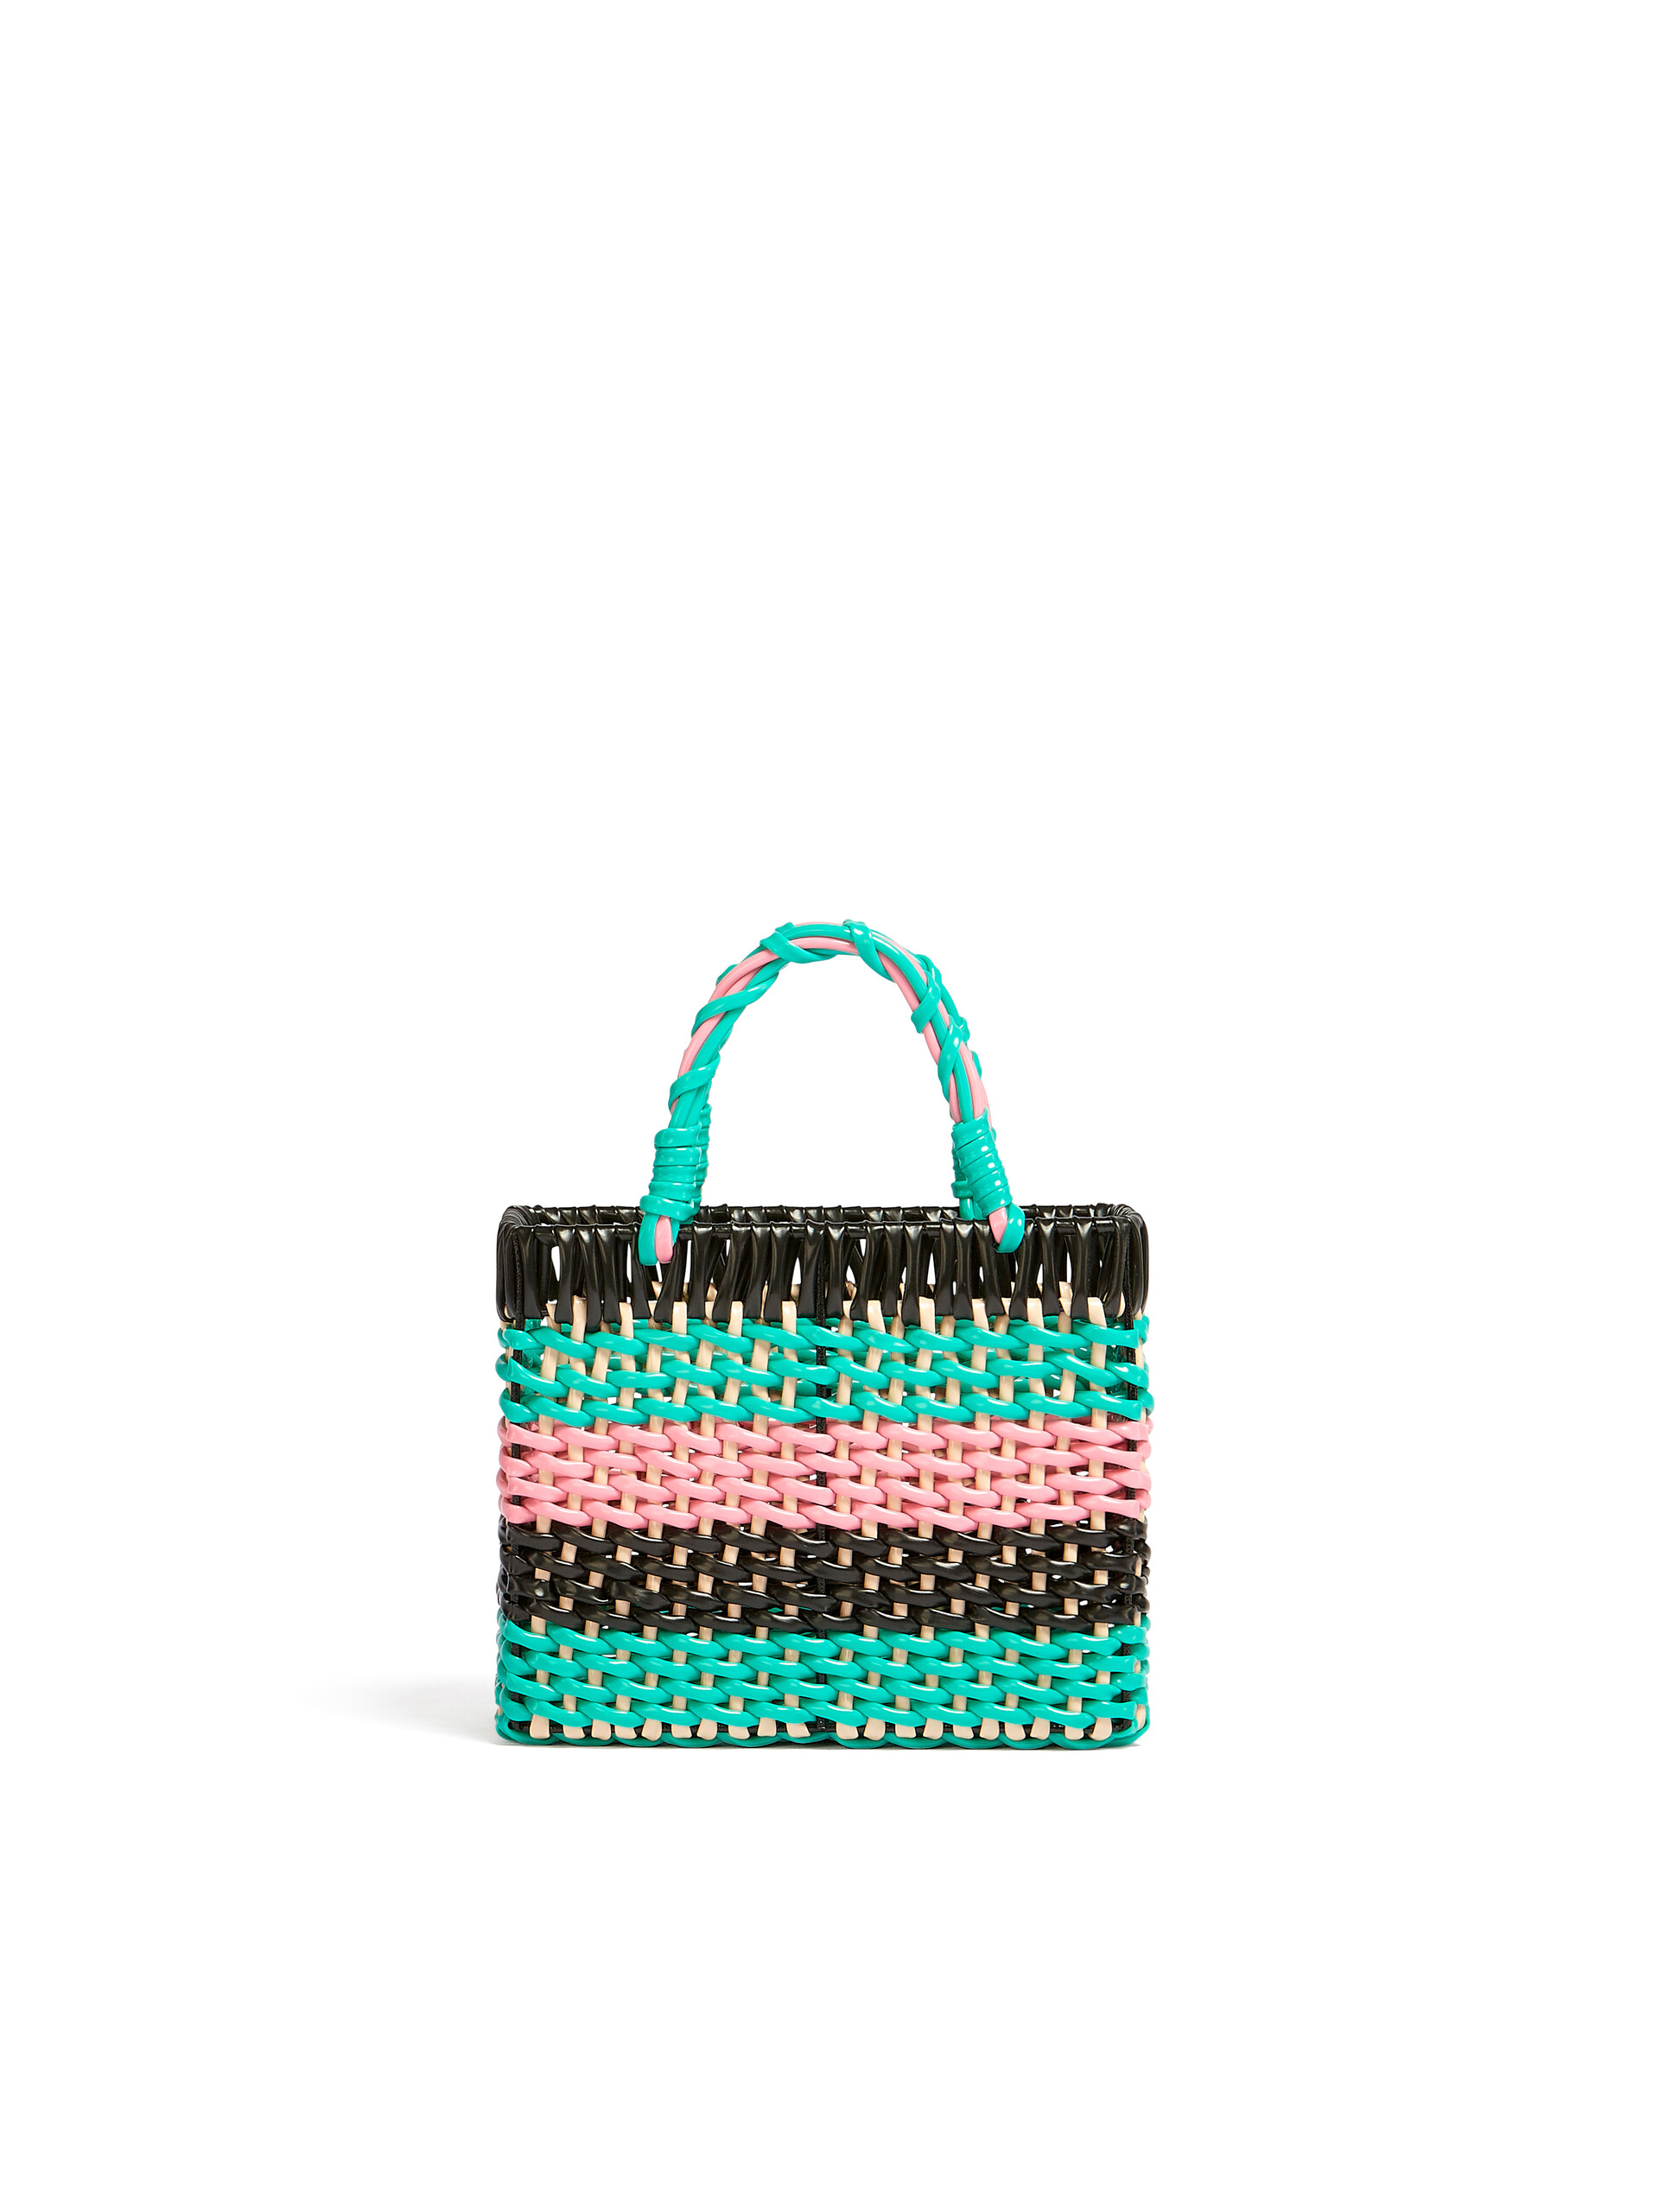 MARNI MARKET multicolour basket - Accessories - Image 3